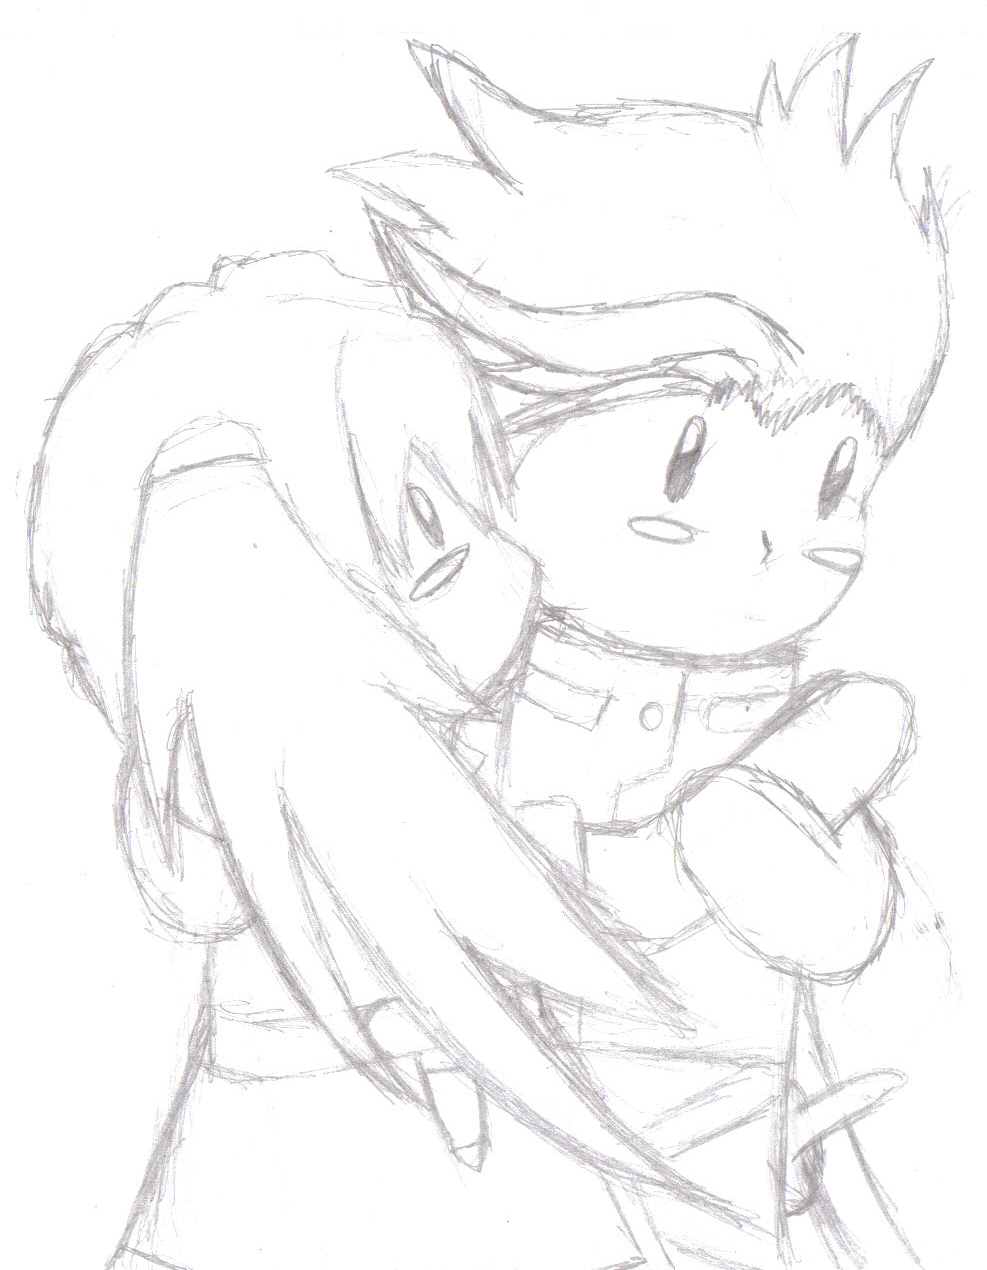 Lloyd and Presea huggle by manga_rules